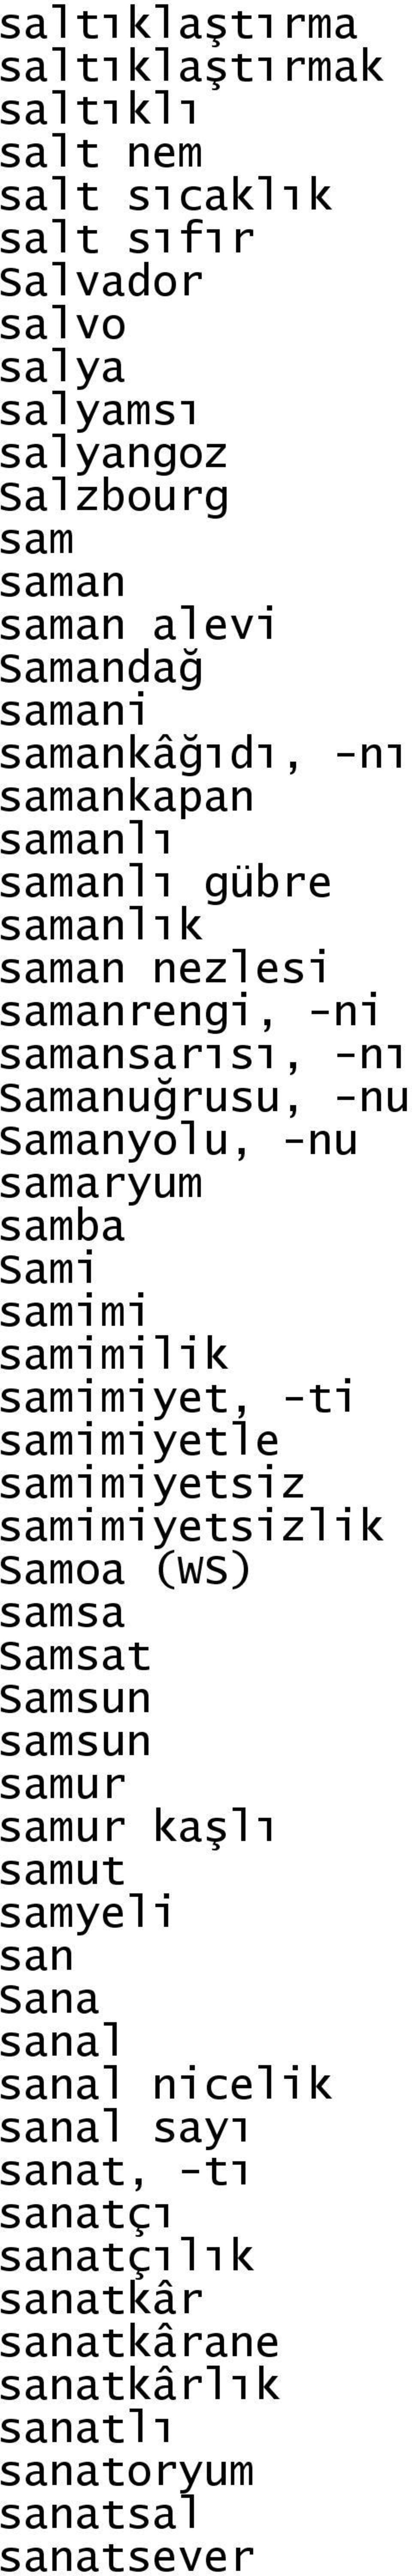 -nu samaryum samba Sami samimi samimilik samimiyet, -ti samimiyetle samimiyetsiz samimiyetsizlik Samoa (WS) samsa Samsat Samsun samsun samur samur